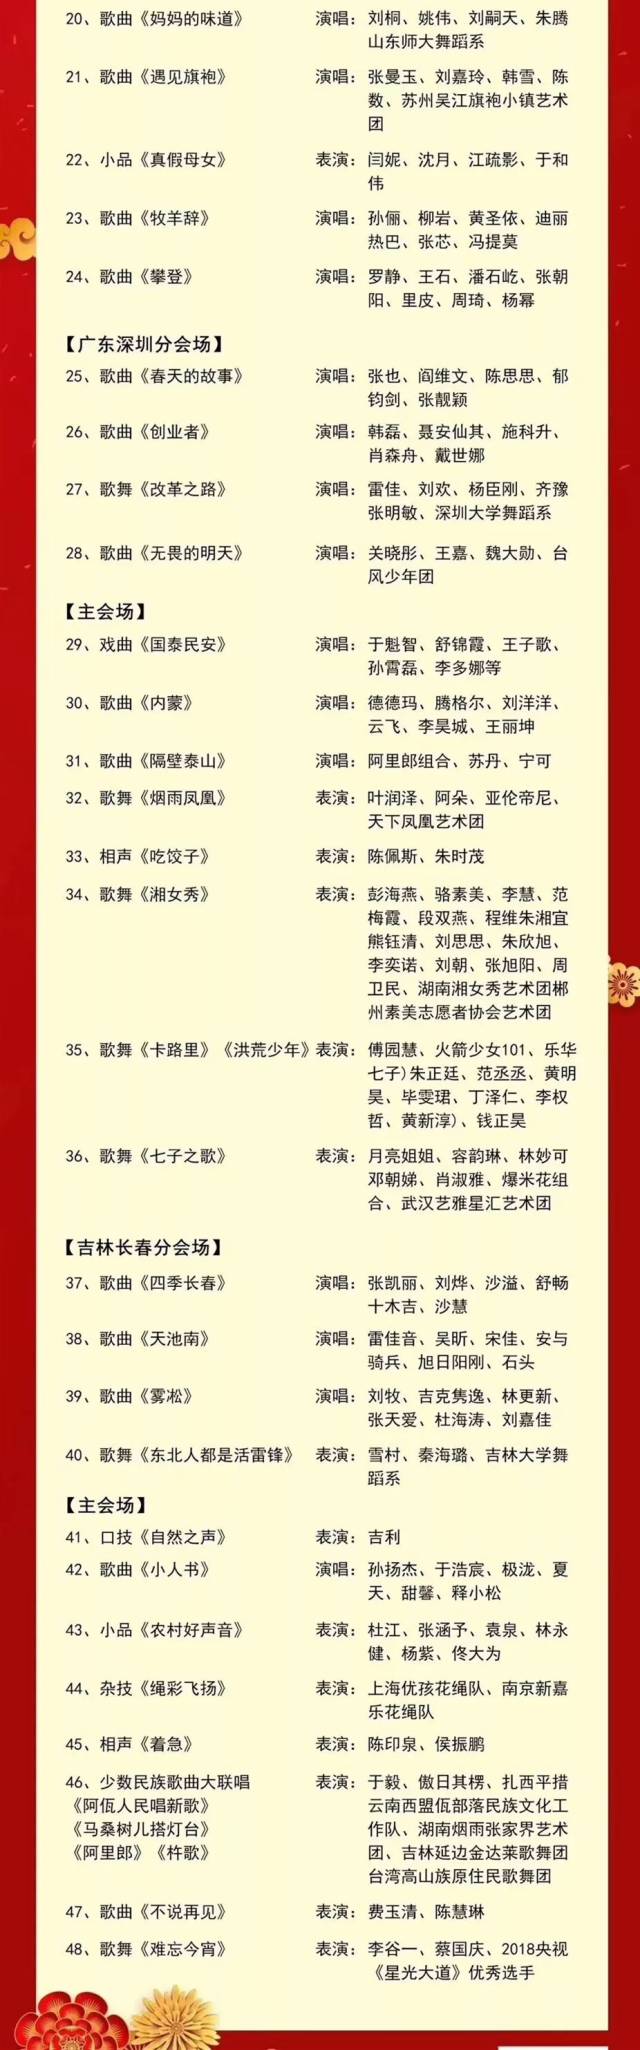 春节晚会演员名单图片